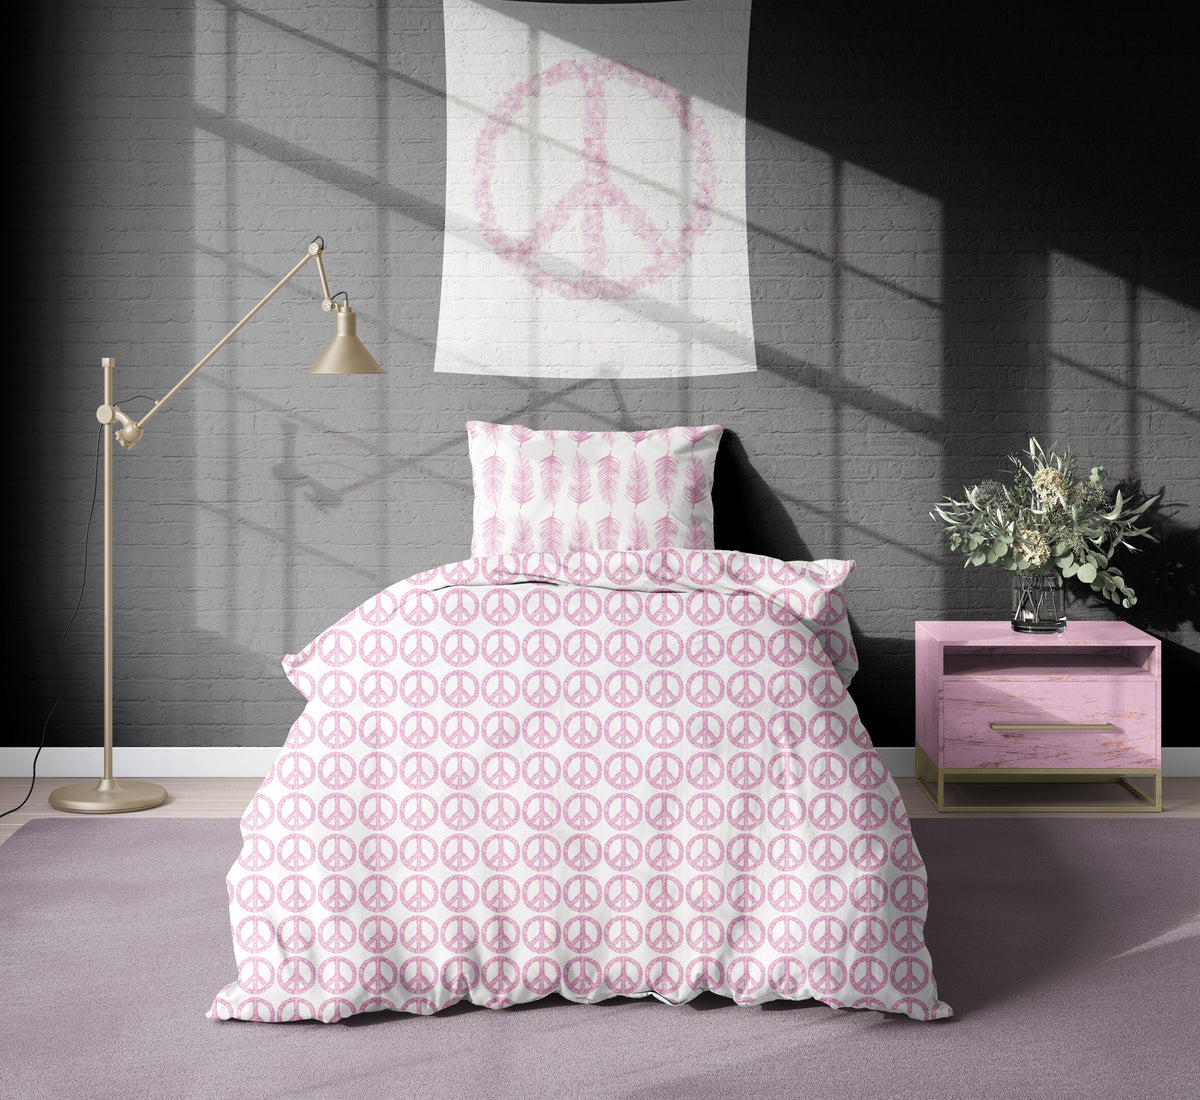 Duvet - Peace Hot Pink Bedding, Duvets MWW XL Twin 